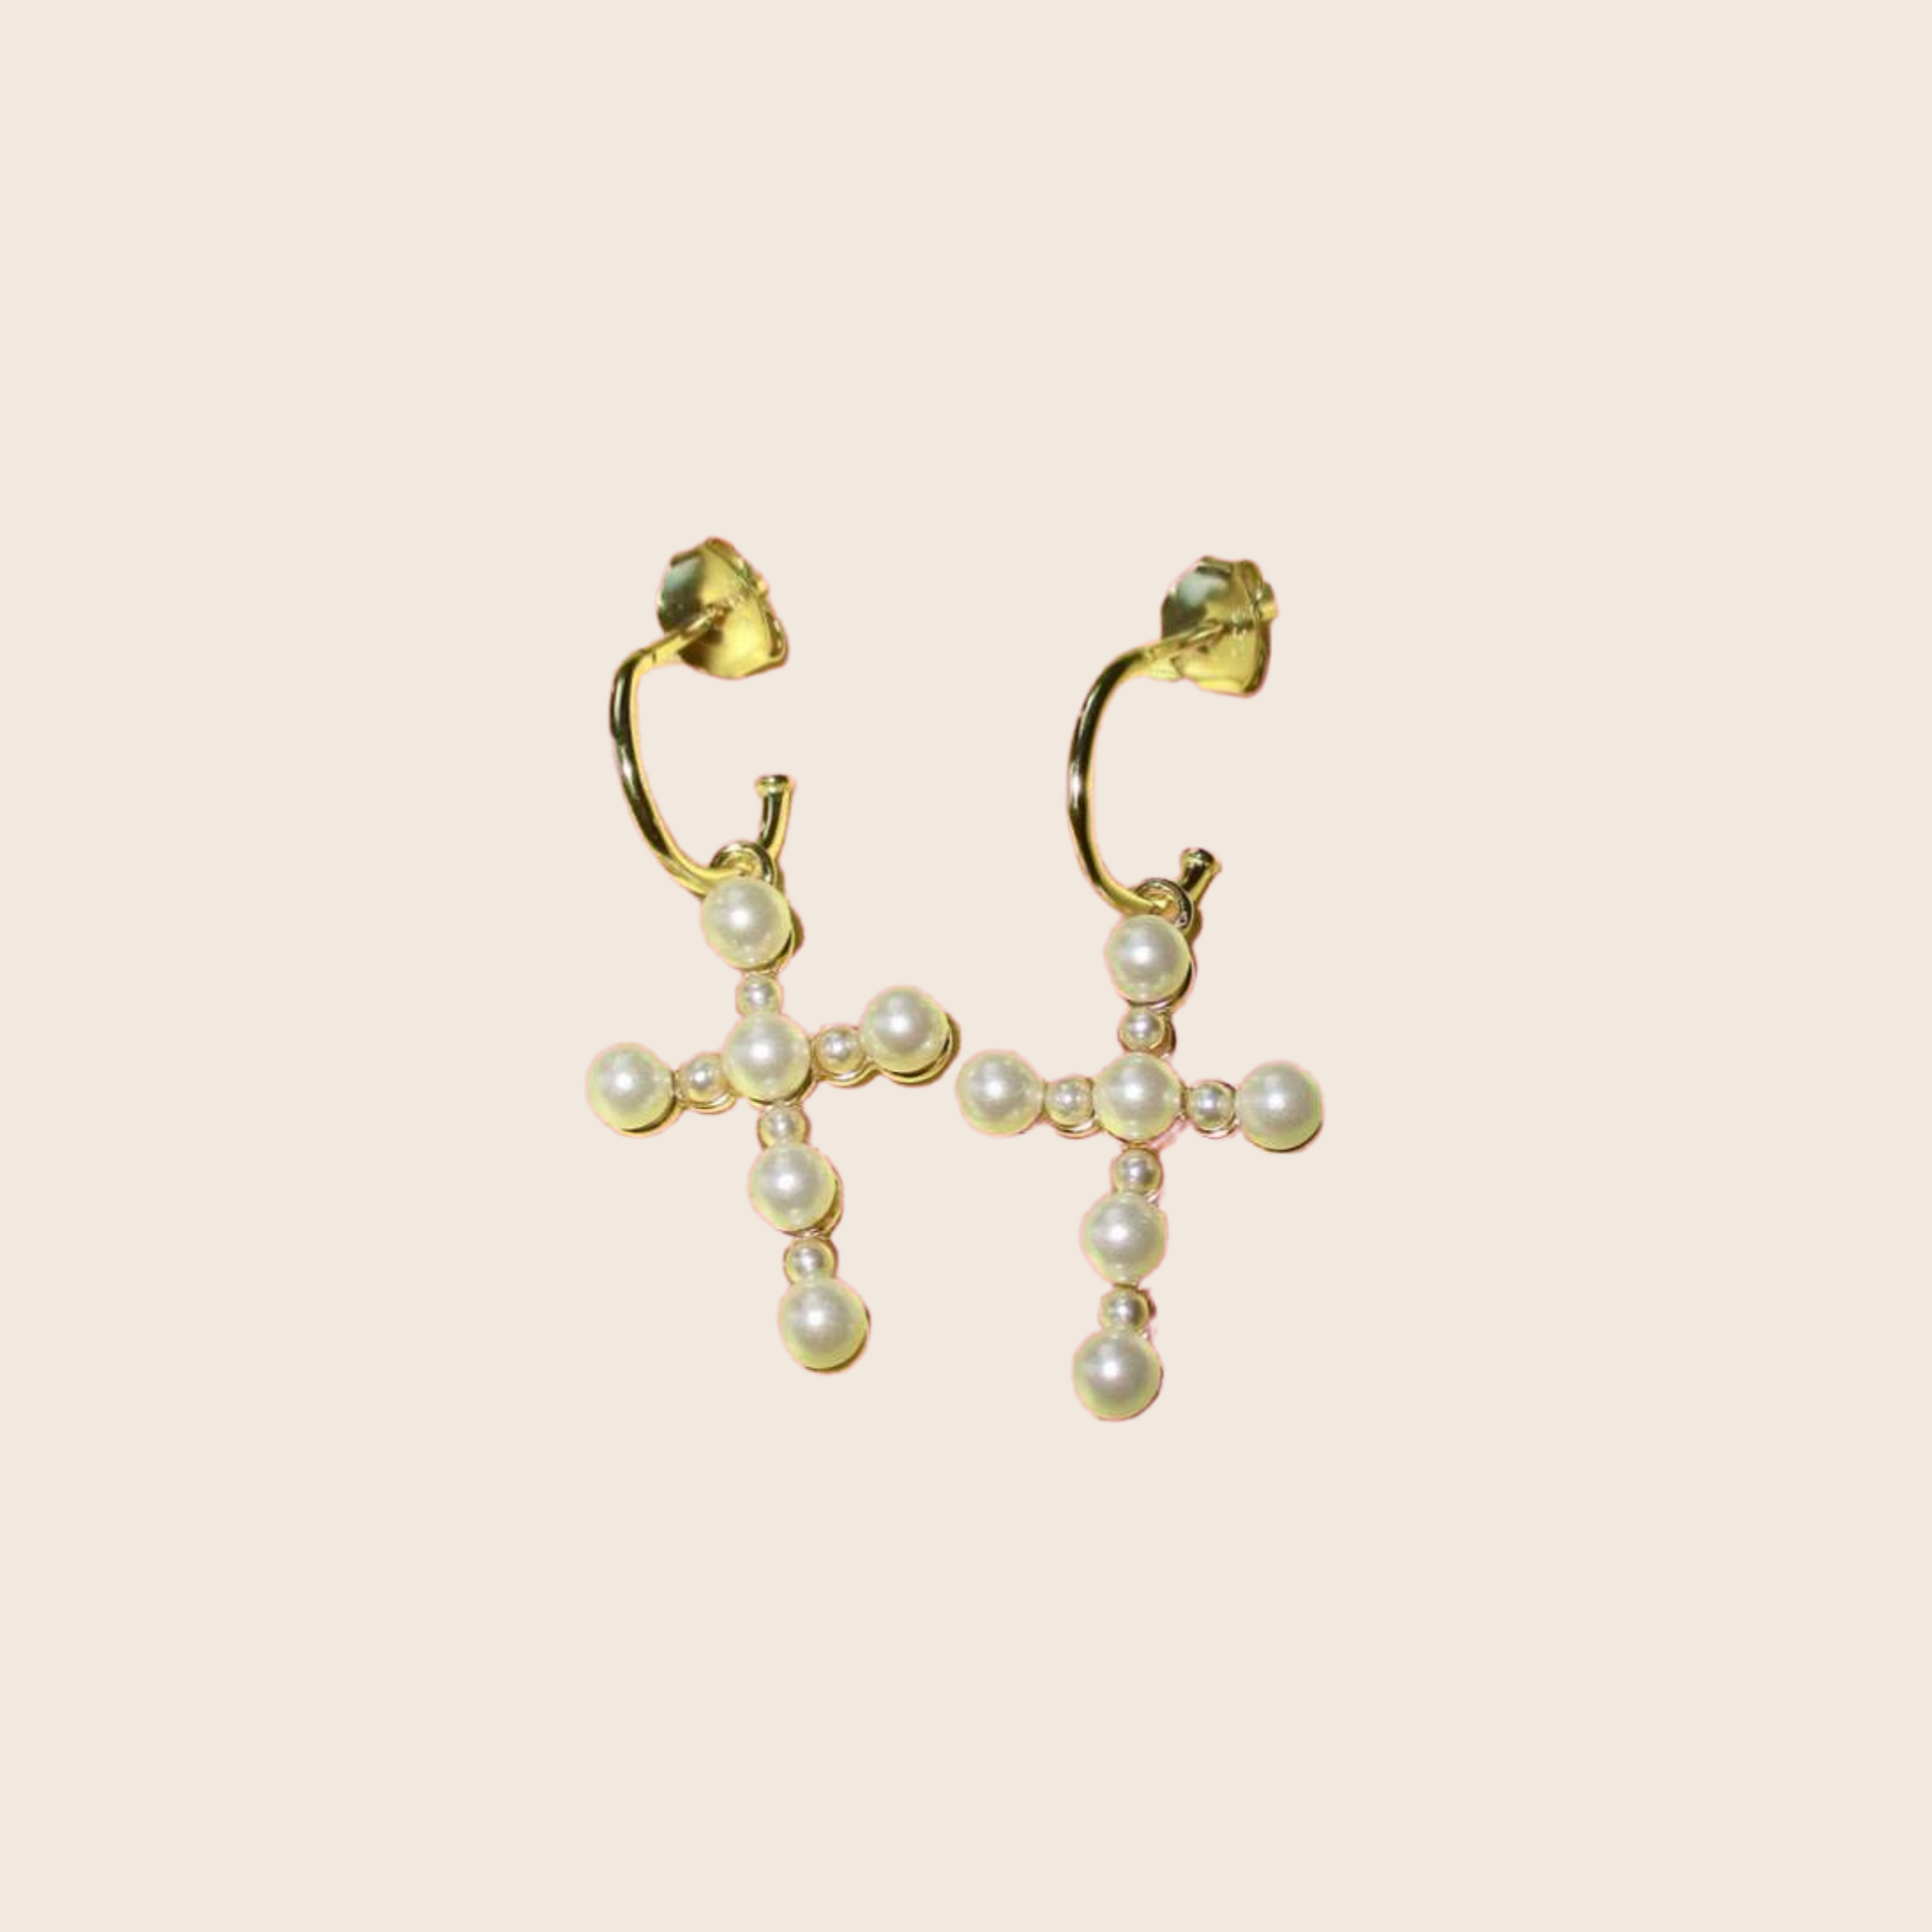 Pearl Cross Earrings - Lemon Lua Pearl Cross Earrings Lemon Lua Lemon Lua Pearl Cross Earrings Pearl Cross Earrings